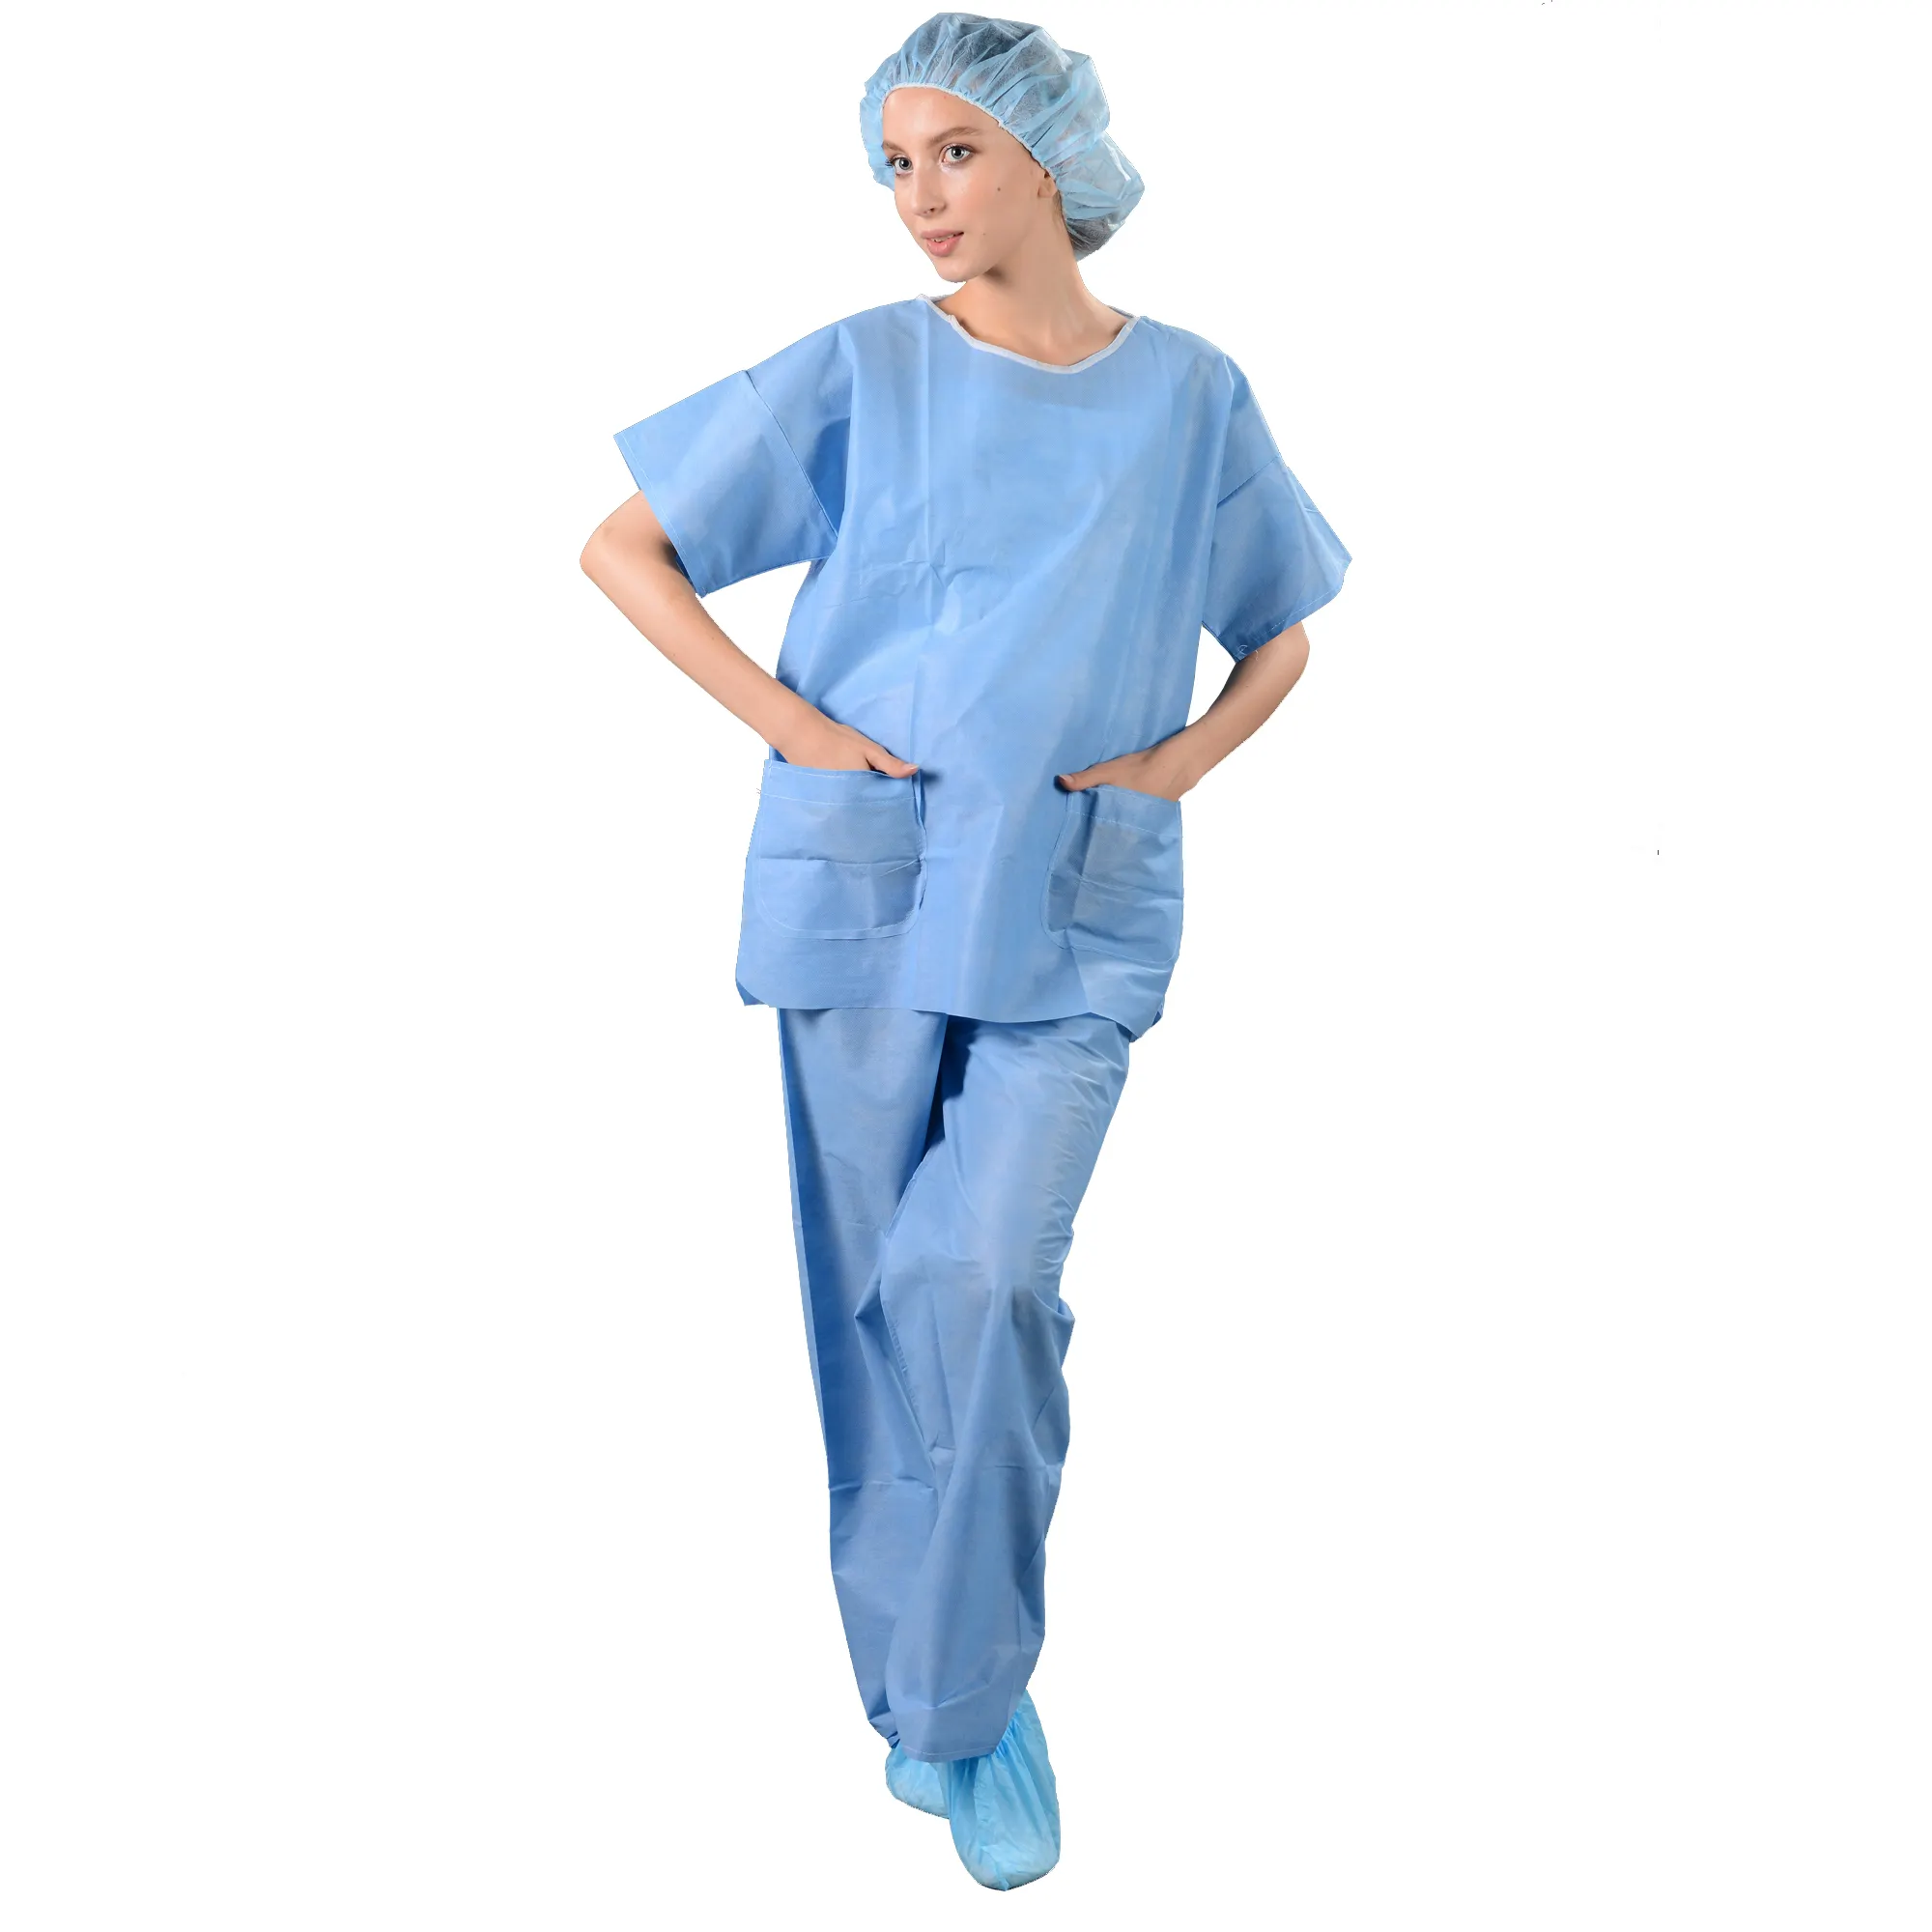 Бесплатный образец больничной униформы одноразовый набор скрабов, медицинские рубашки и брюки, синие одноразовые скрабы